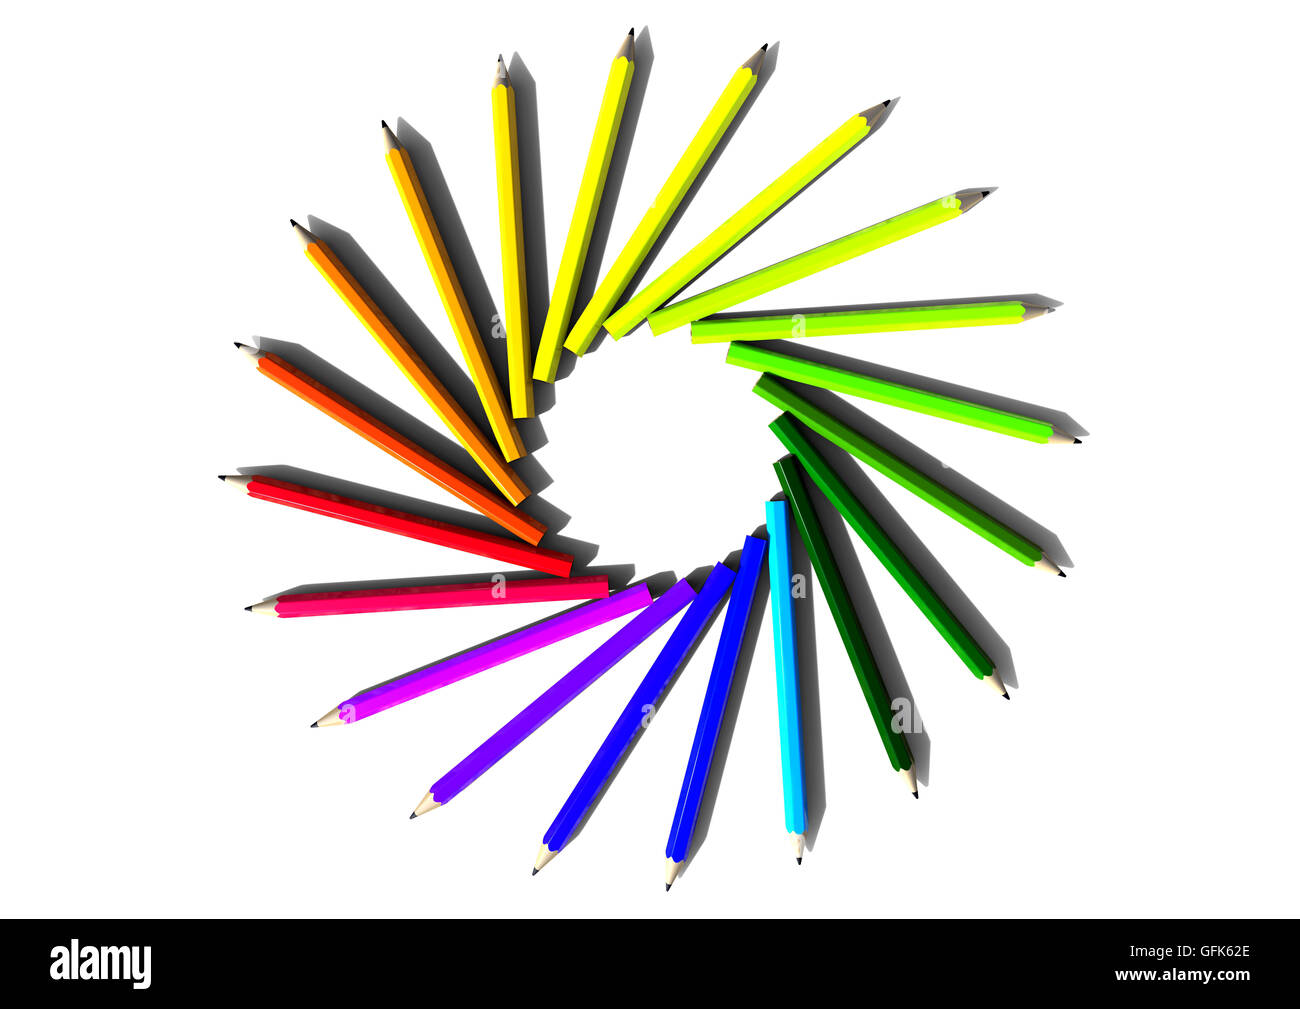 3D Render-Bild, das einen Kreis aus farbigen Buntstiften darstellt Stockfoto